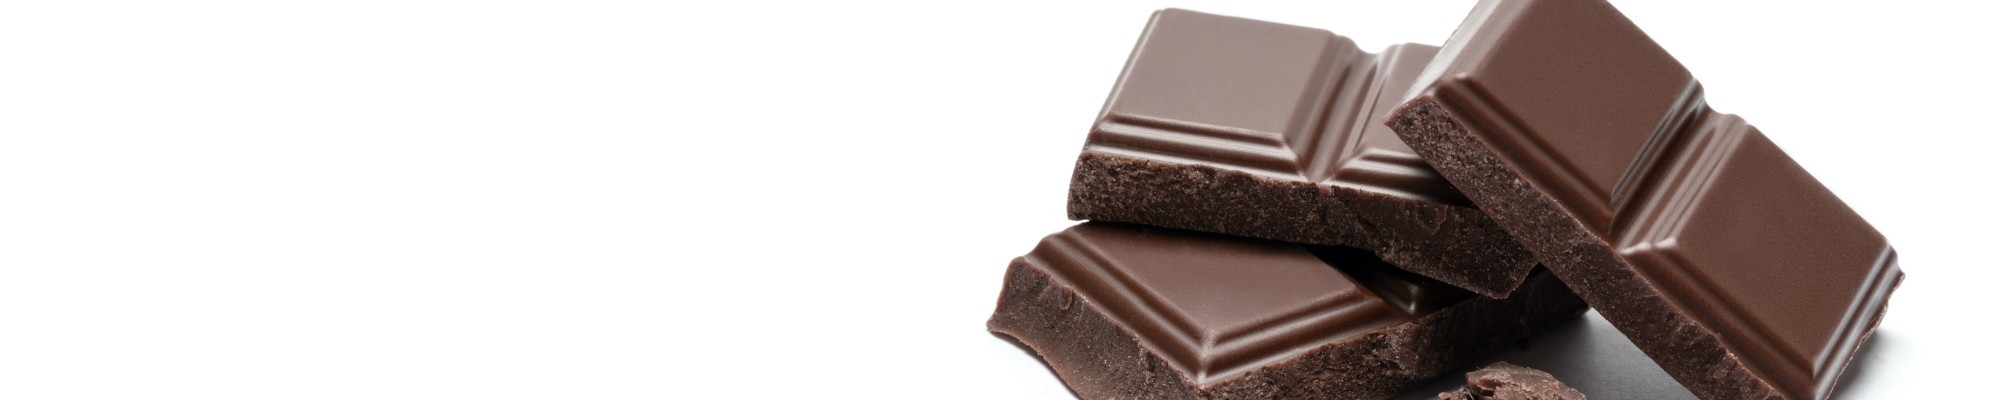 Chocolates Bio y Ecológicos - SUPERNATURA